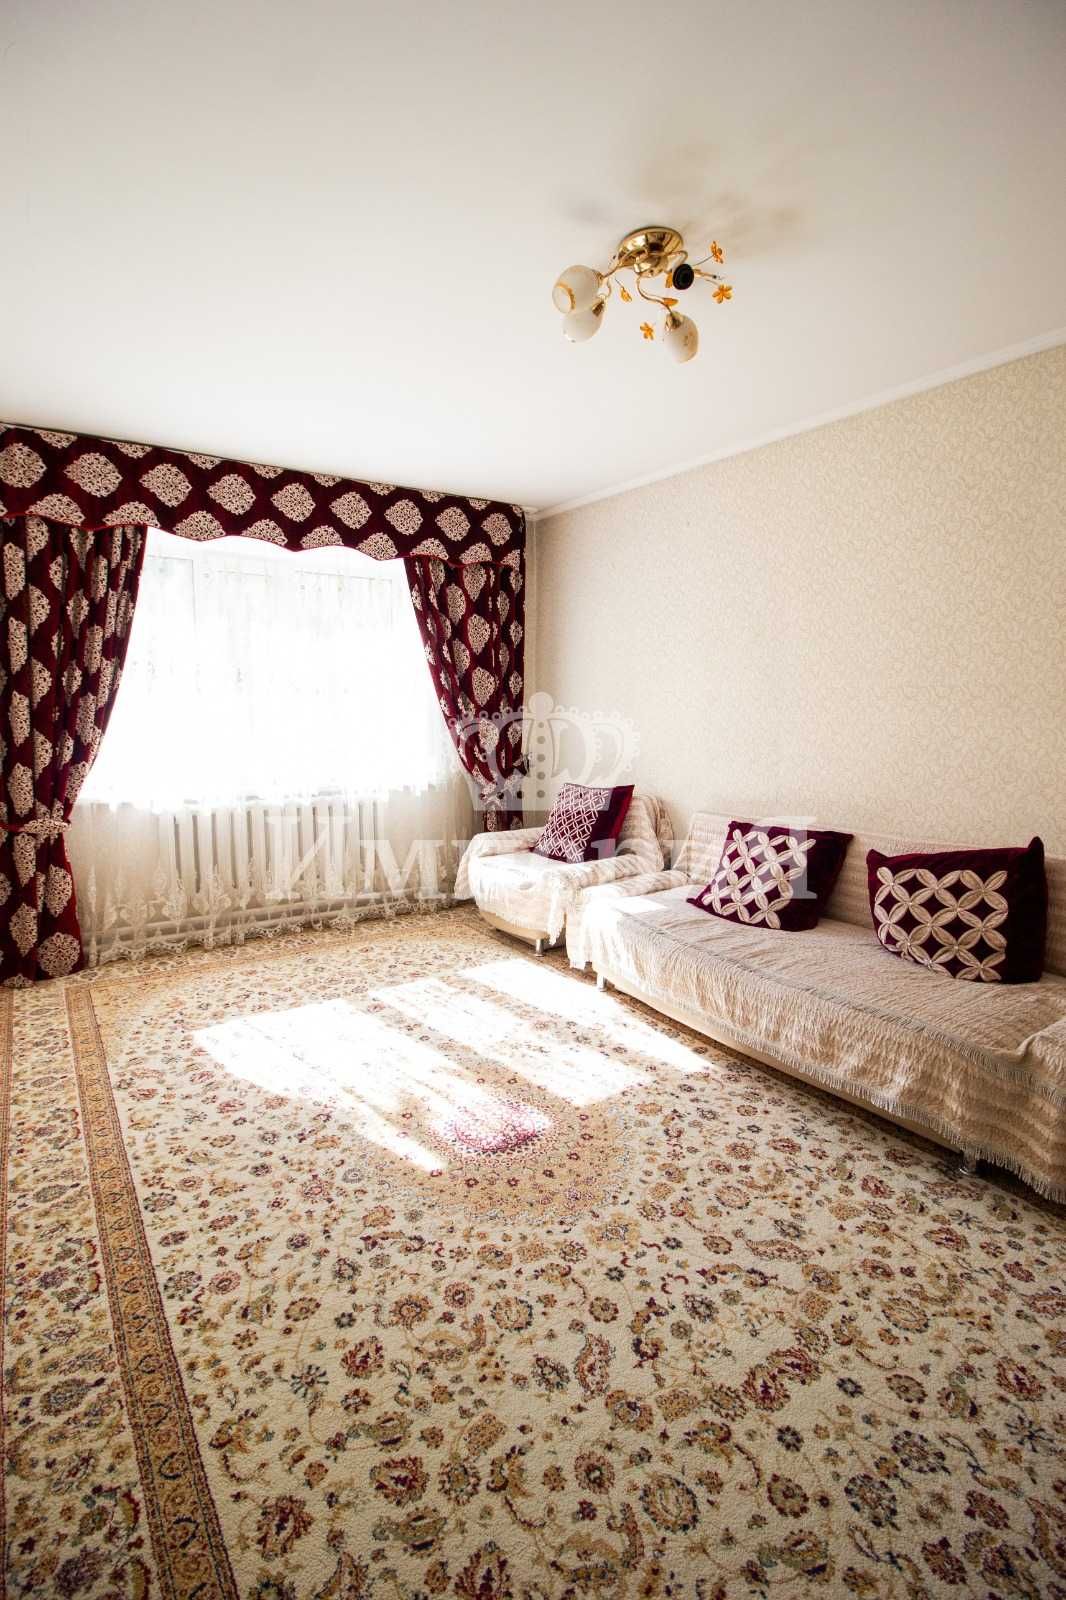 Продается улучшенная 3х комнатная квартира Новостройка Анна  Империя